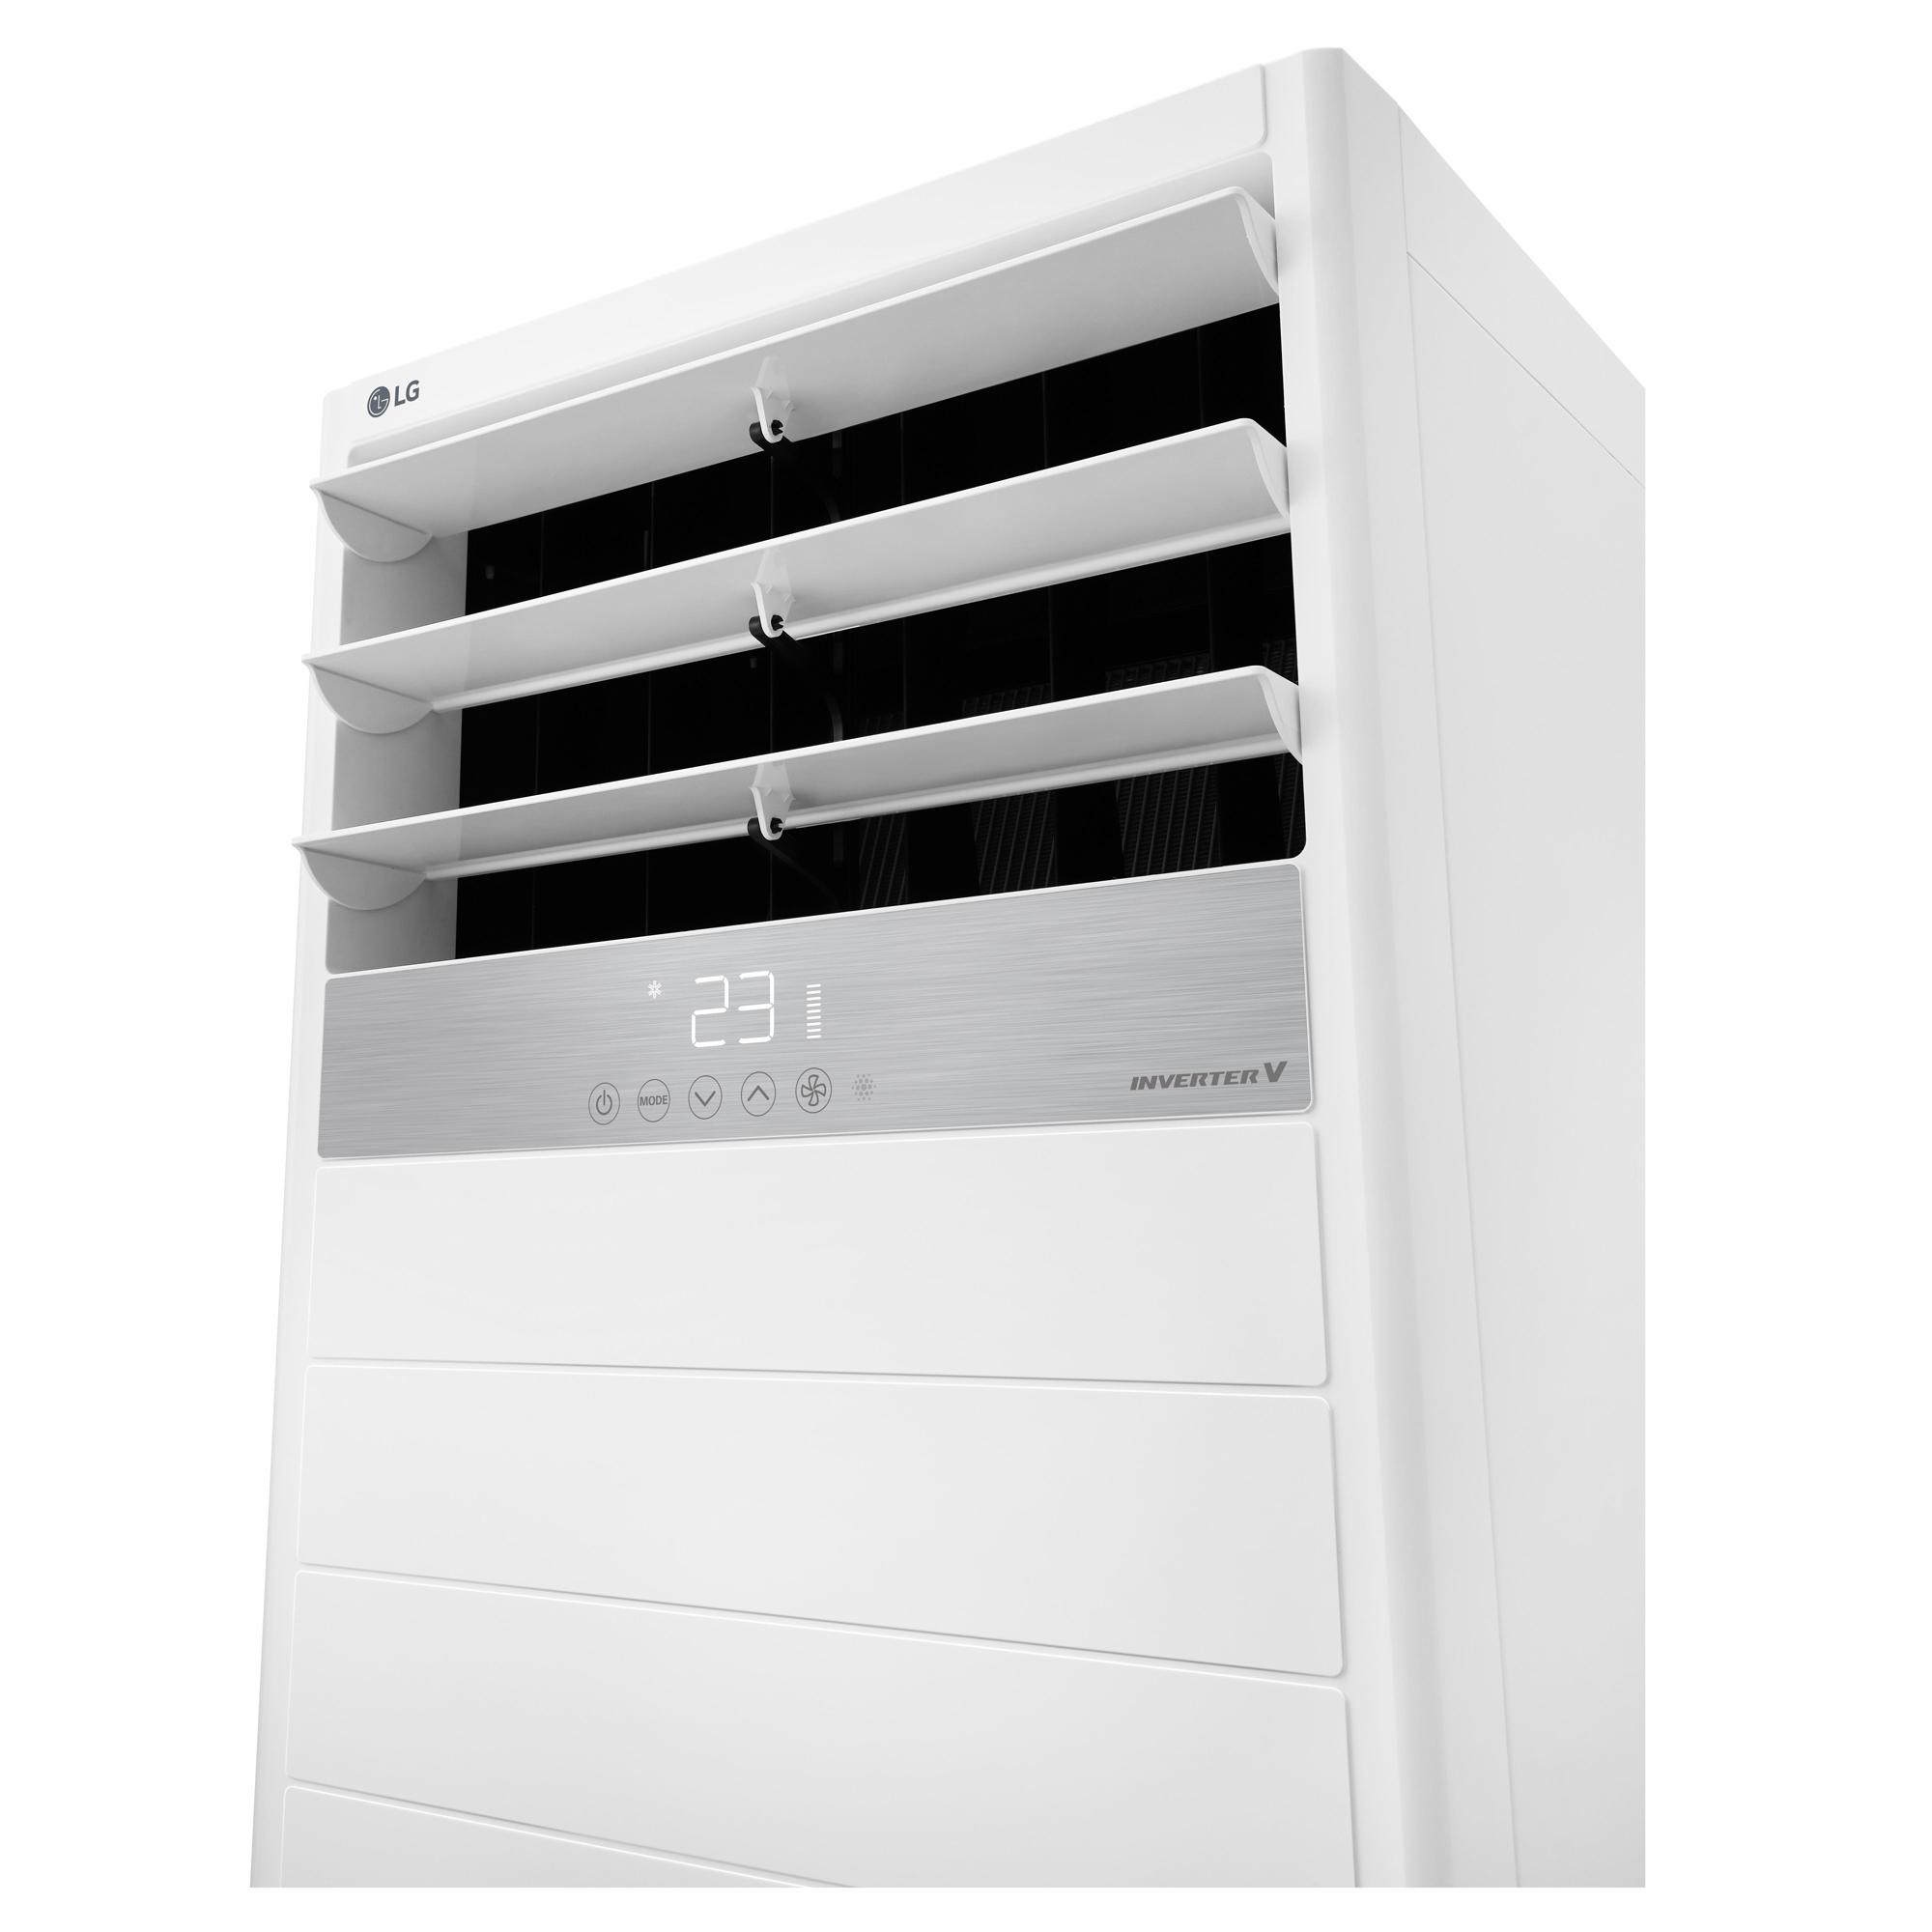 Máy lạnh tủ đứng LG APNQ30GR5A3 (3.0Hp) Inverter